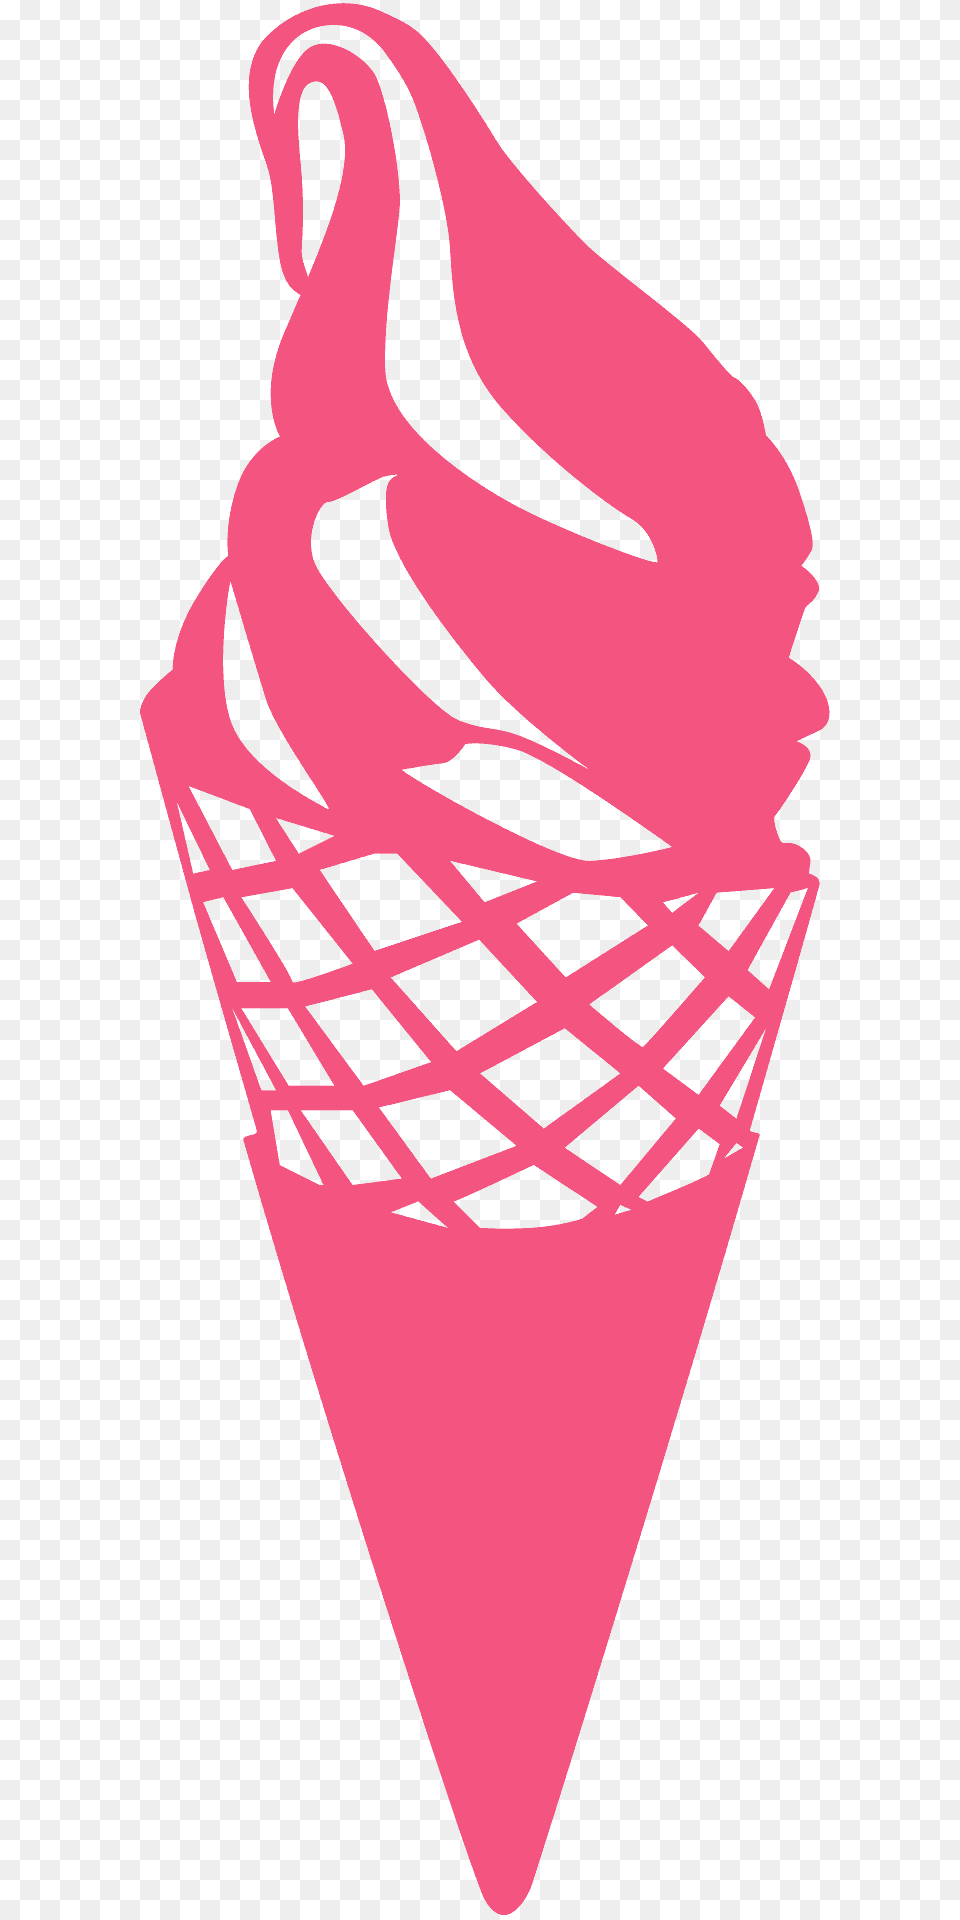 Ice Cream Silhouette, Dessert, Food, Ice Cream, Cone Free Transparent Png